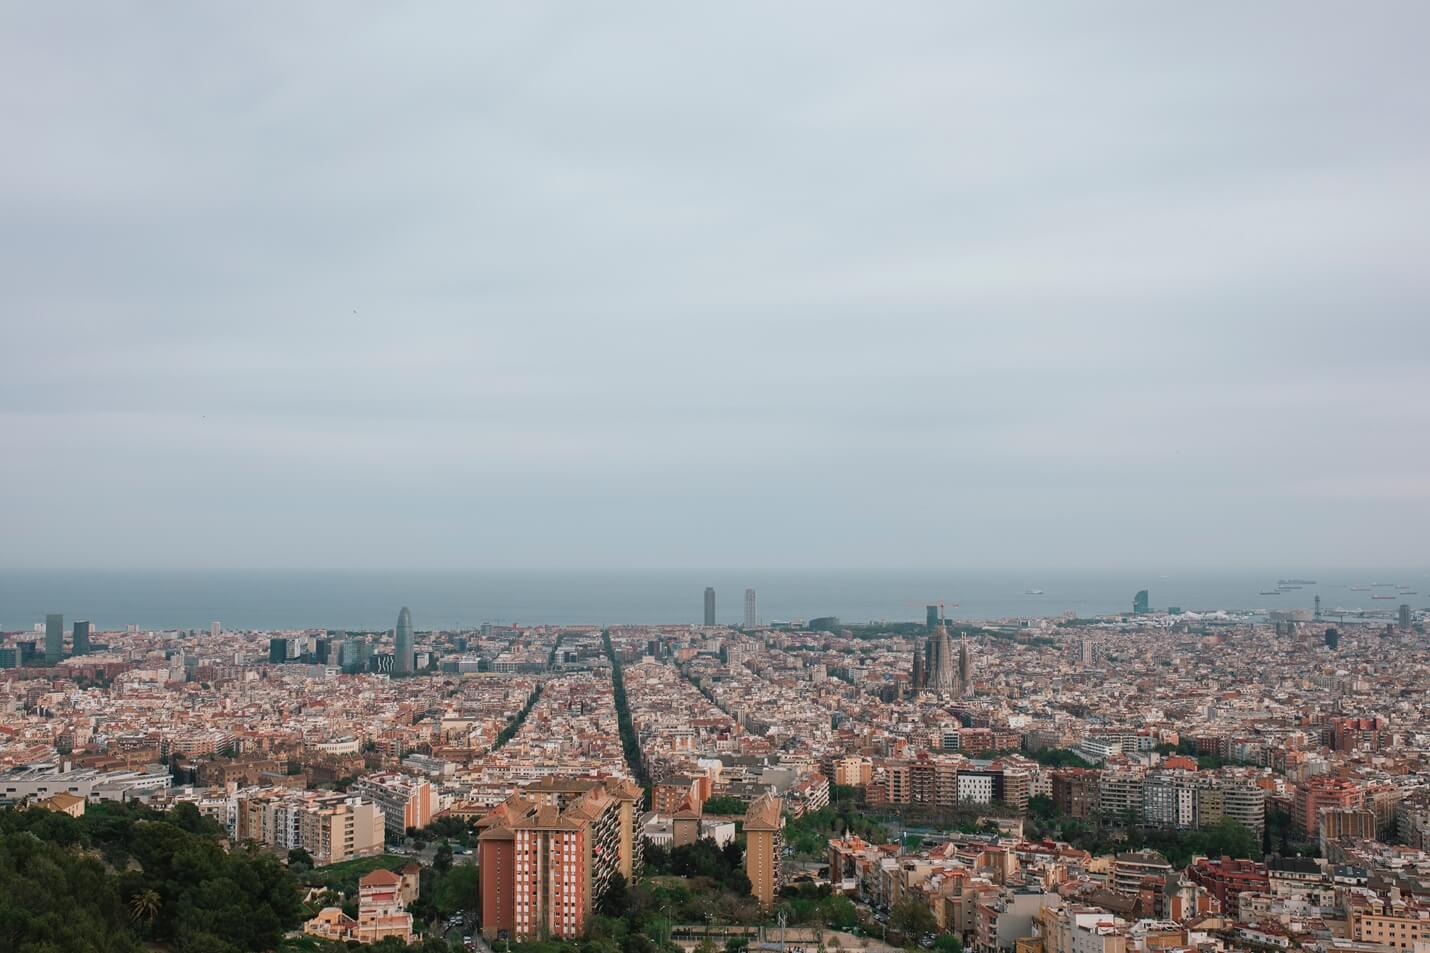 Insider Tipps für Barcelona - Top